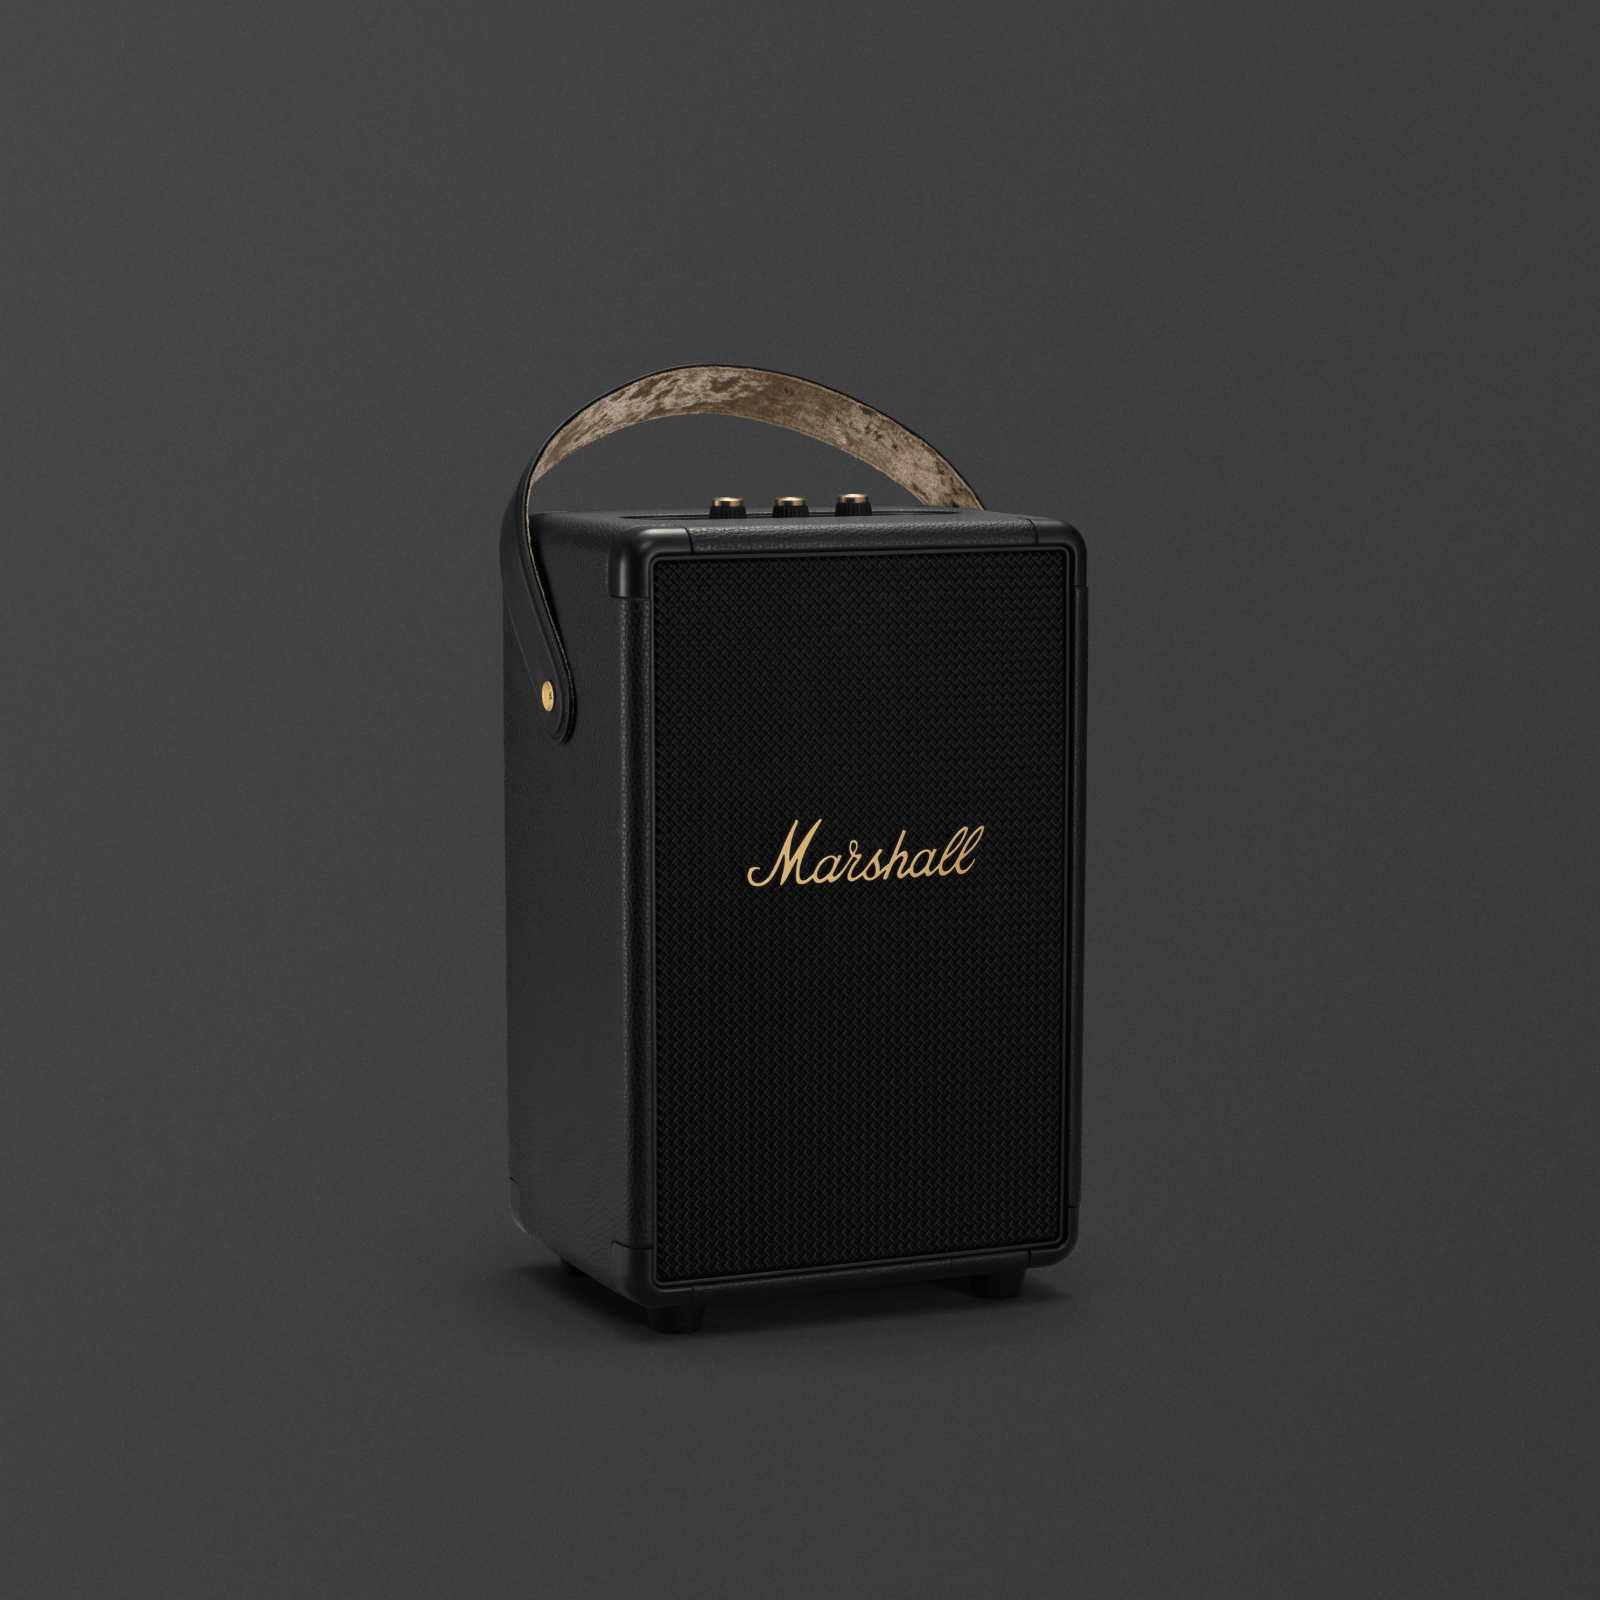 L'enceinte Bluetooth portable Marshall Tufton Black and Brass est une enceinte noire élégante qui délivre un son puissant.